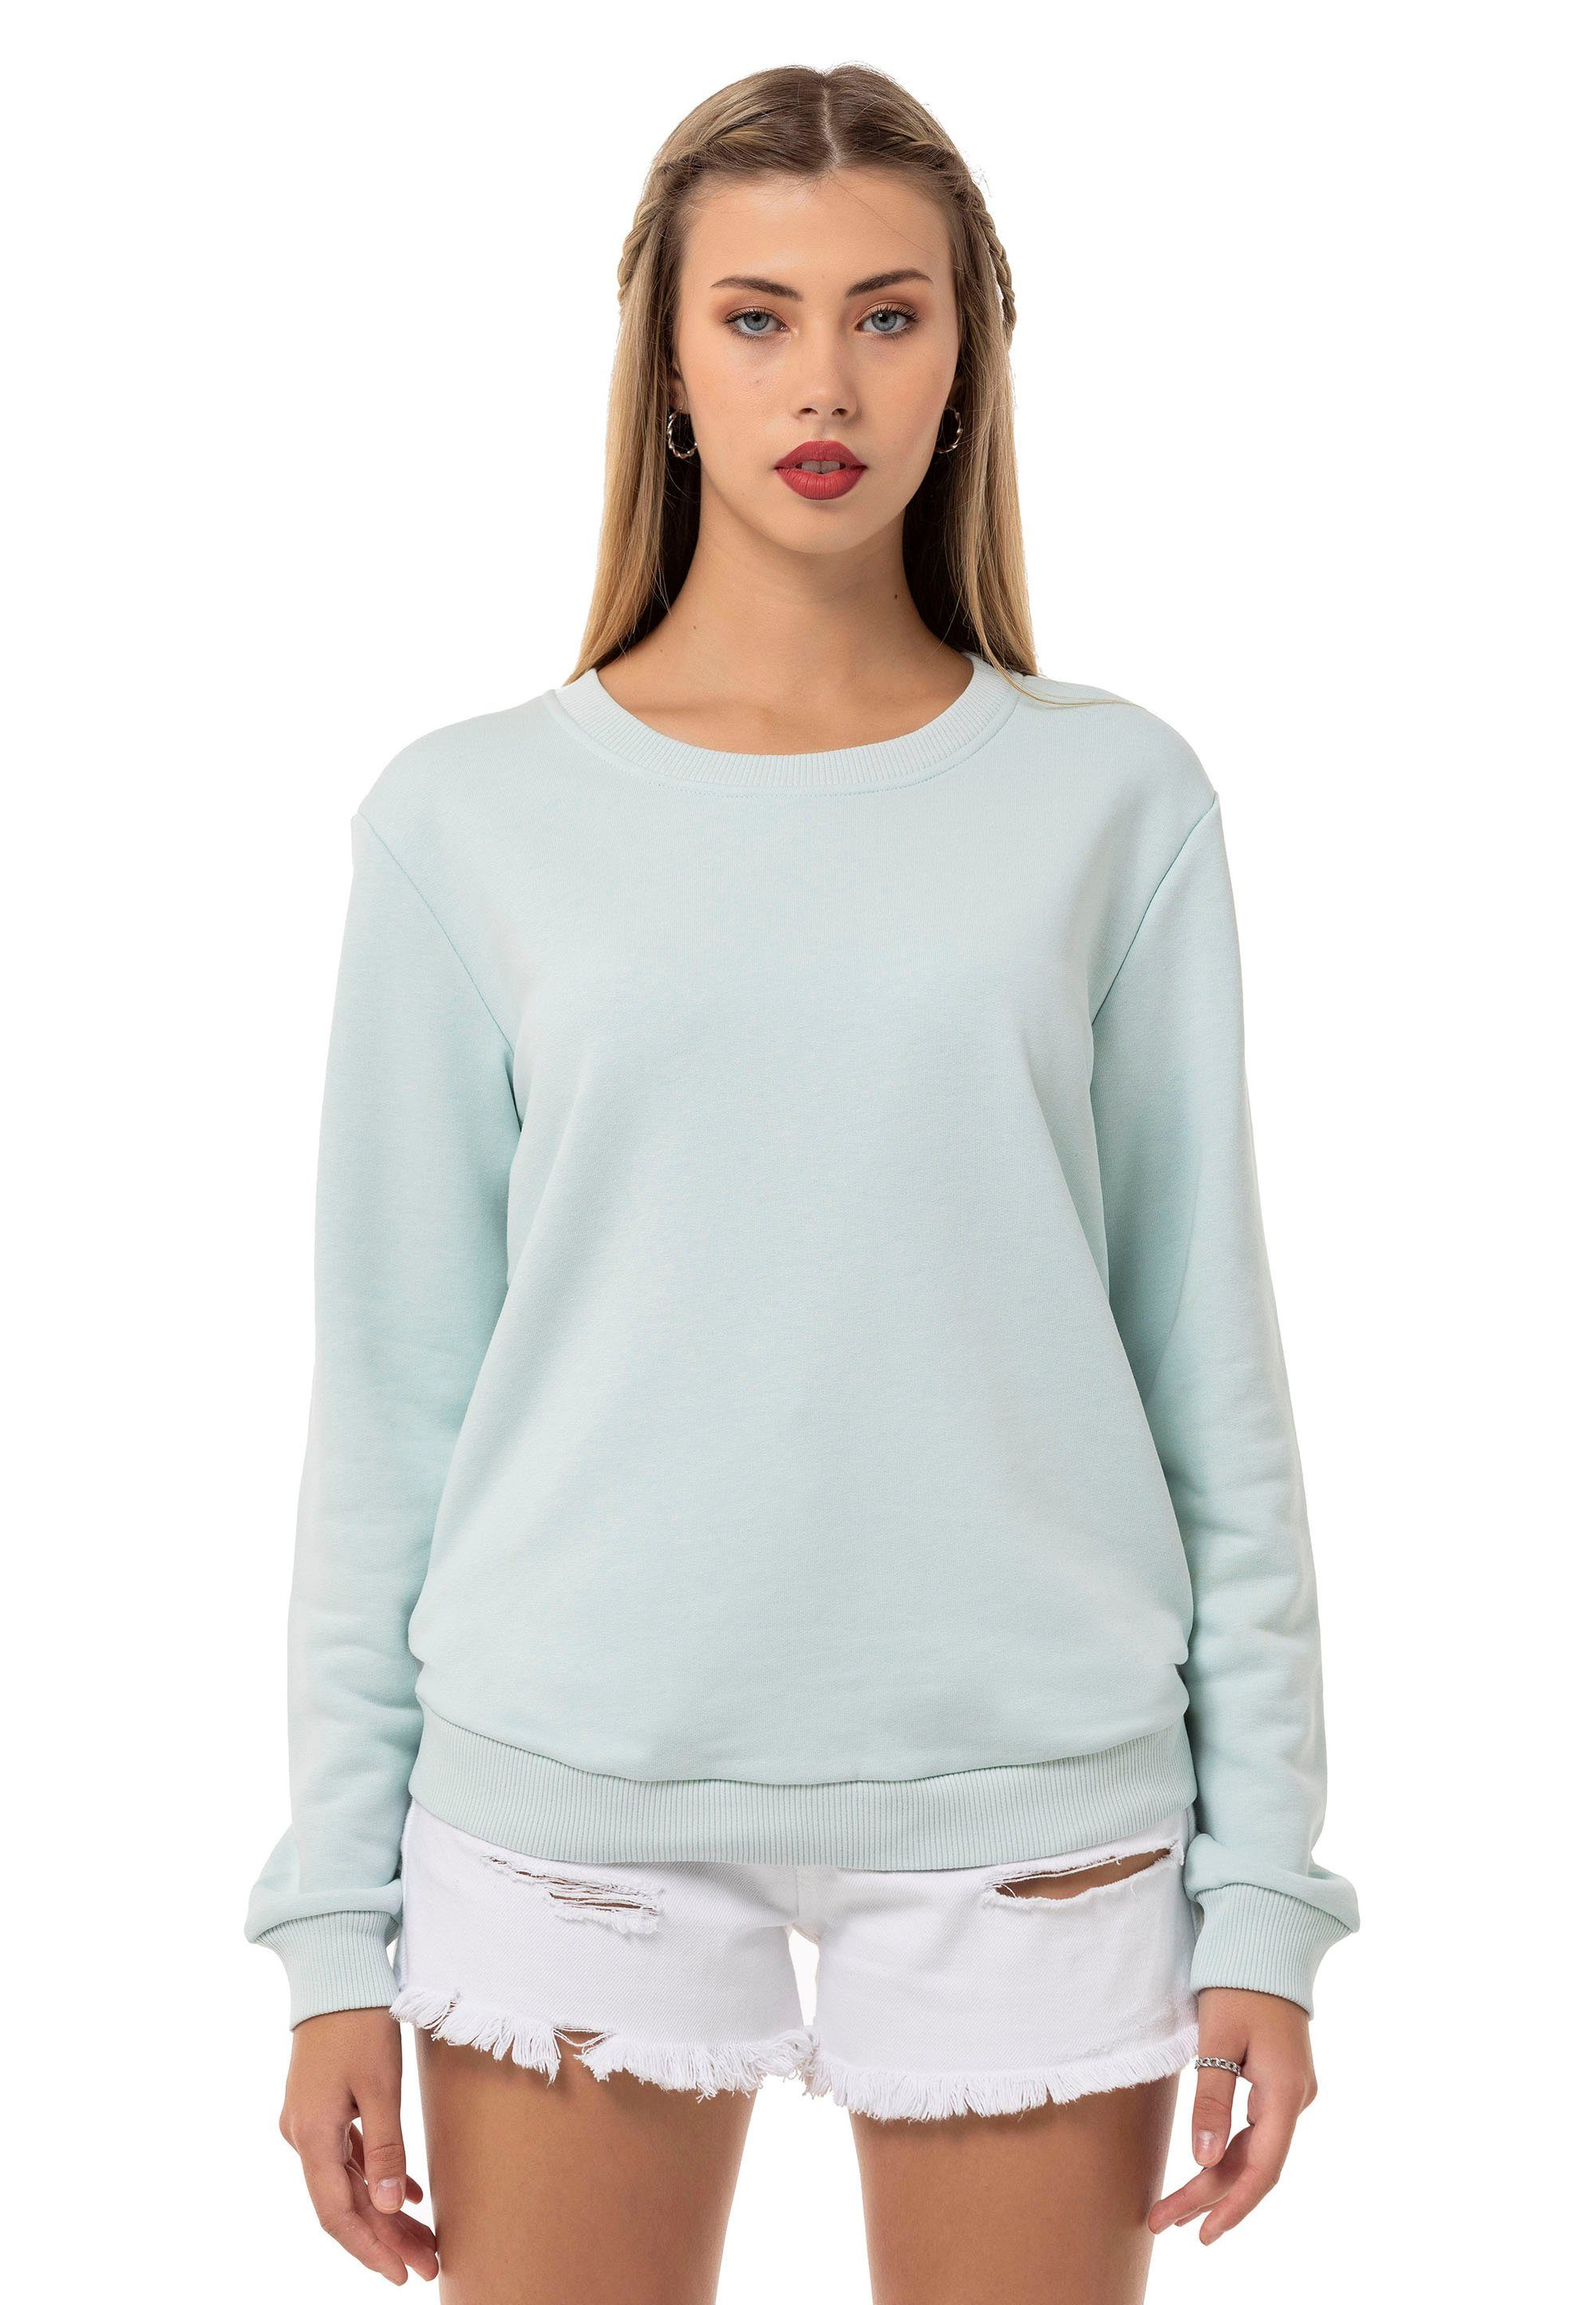 Pullover Sweatshirt Qualität Mint Premium RedBridge Rundhals